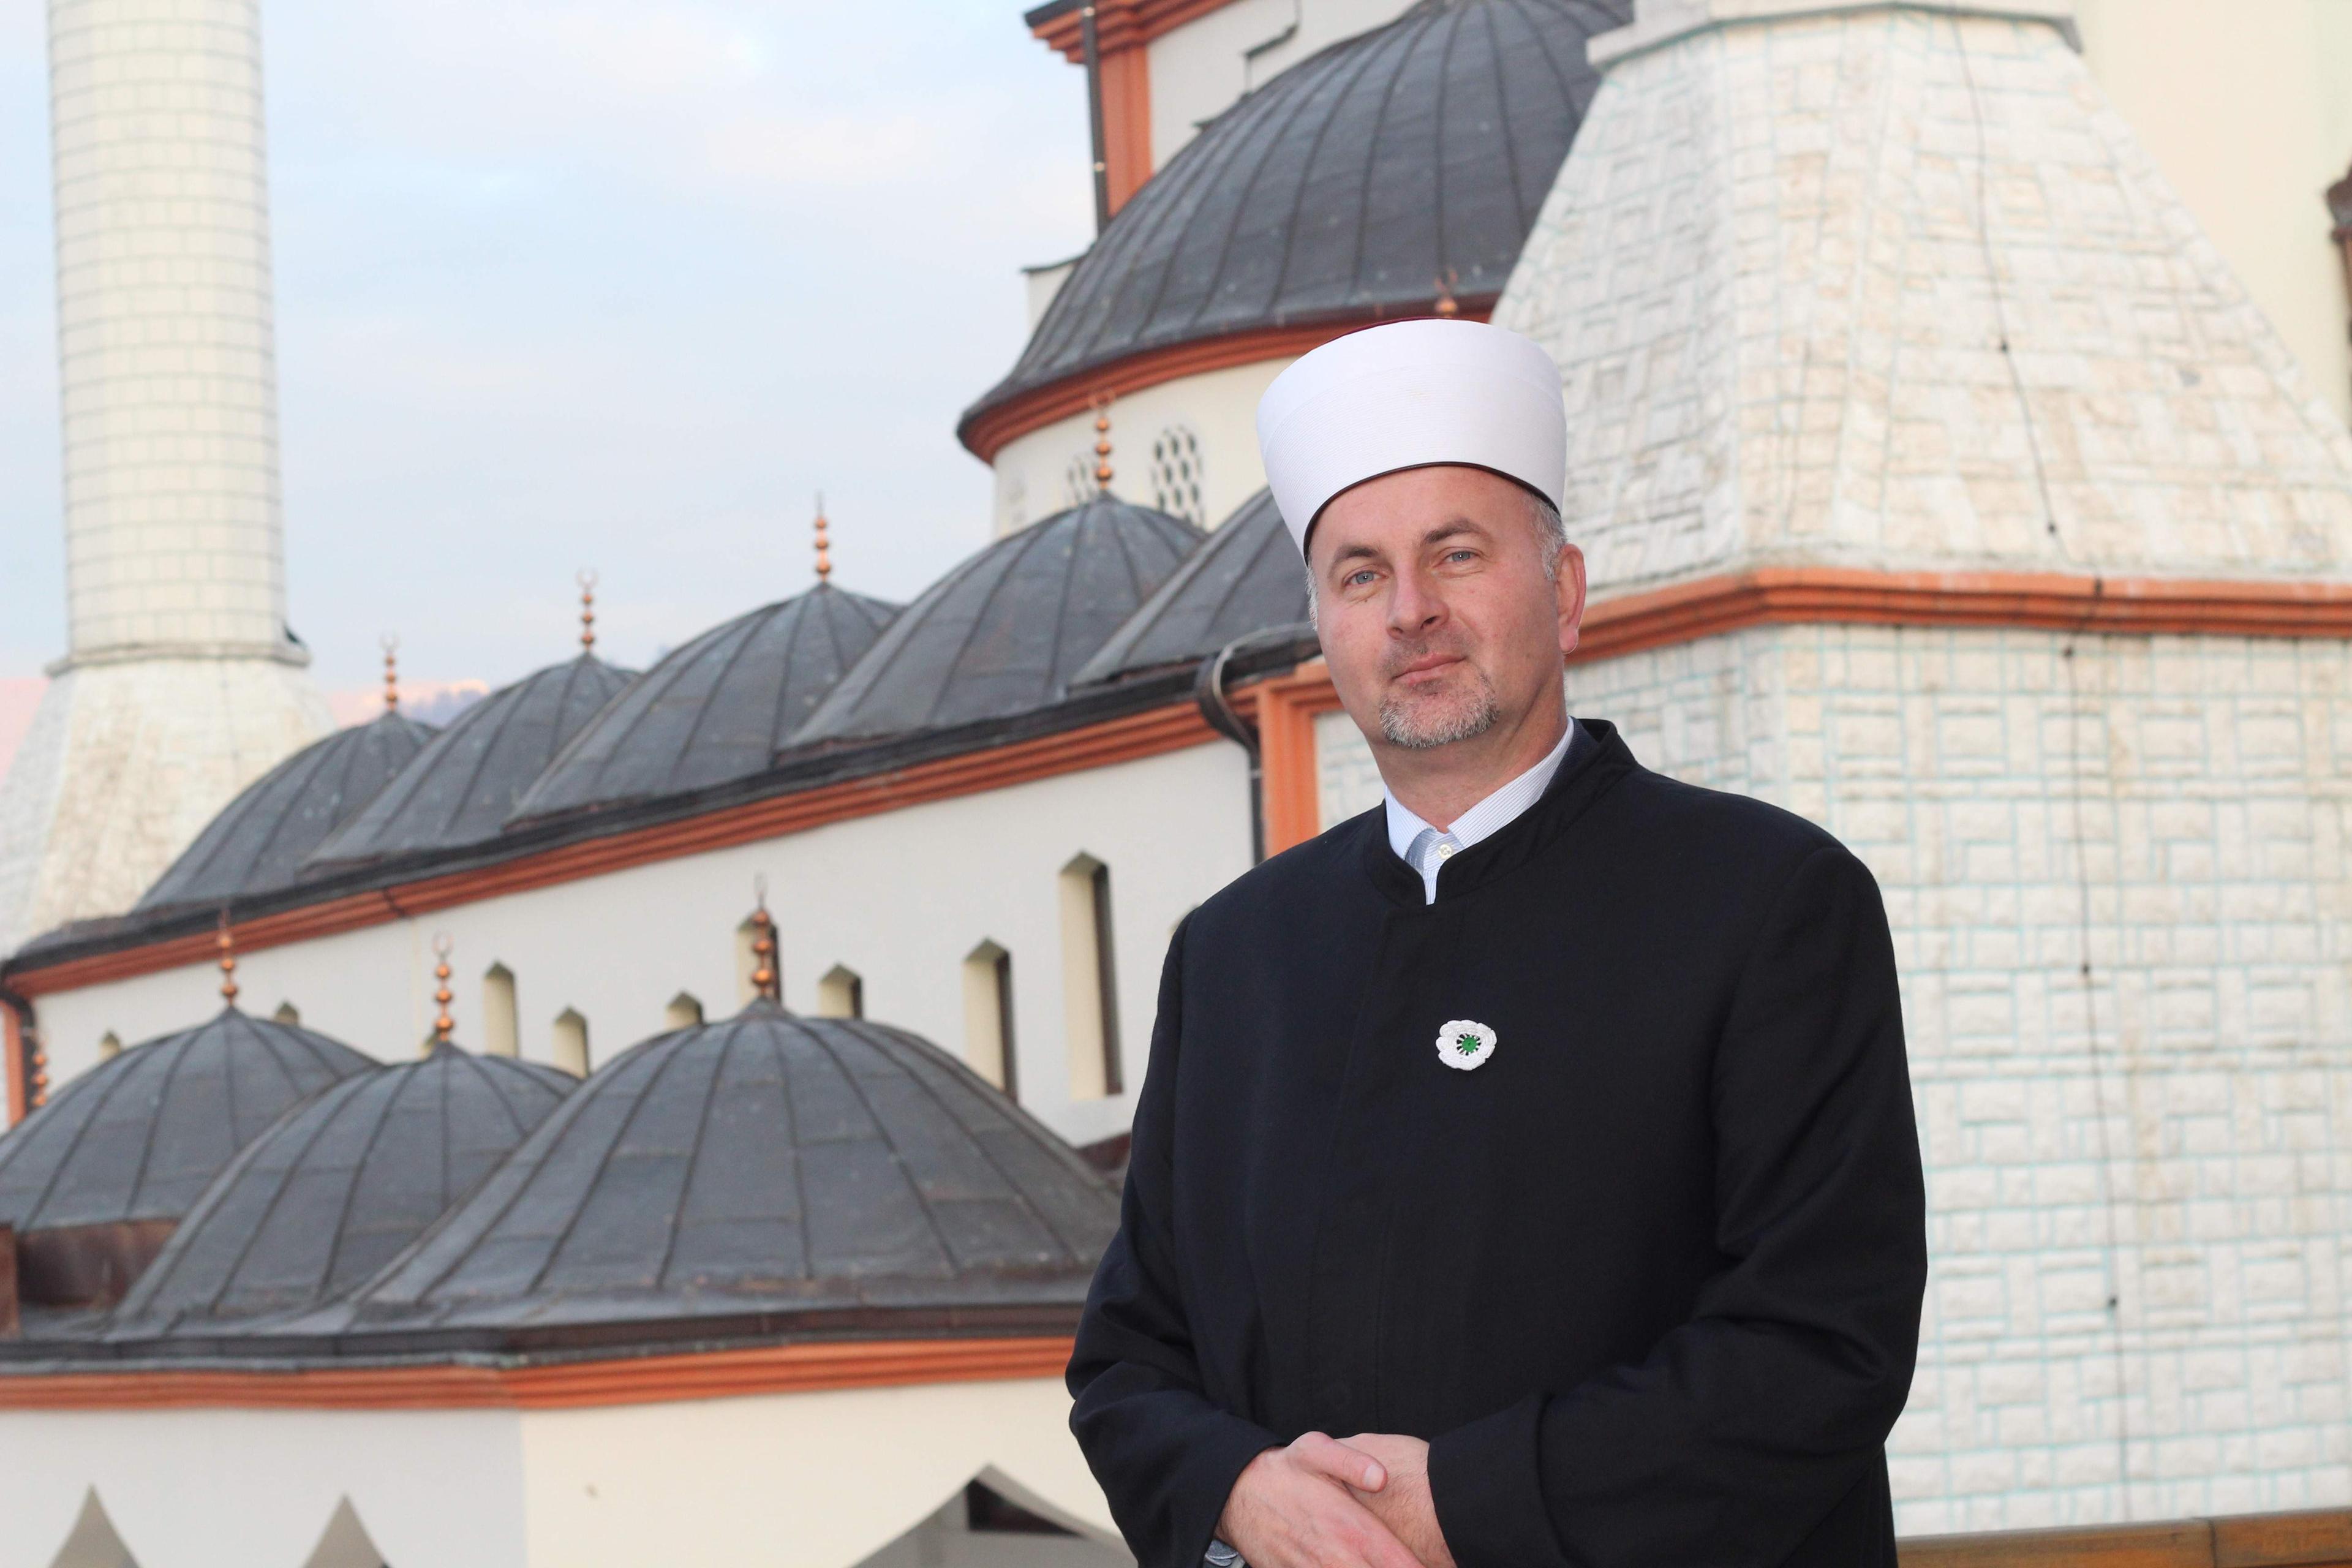 Goraždanski muftija Remzija ef. Pitić za “Avaz”: Gradimo mir u sebi, da bismo širili mir u svijetu